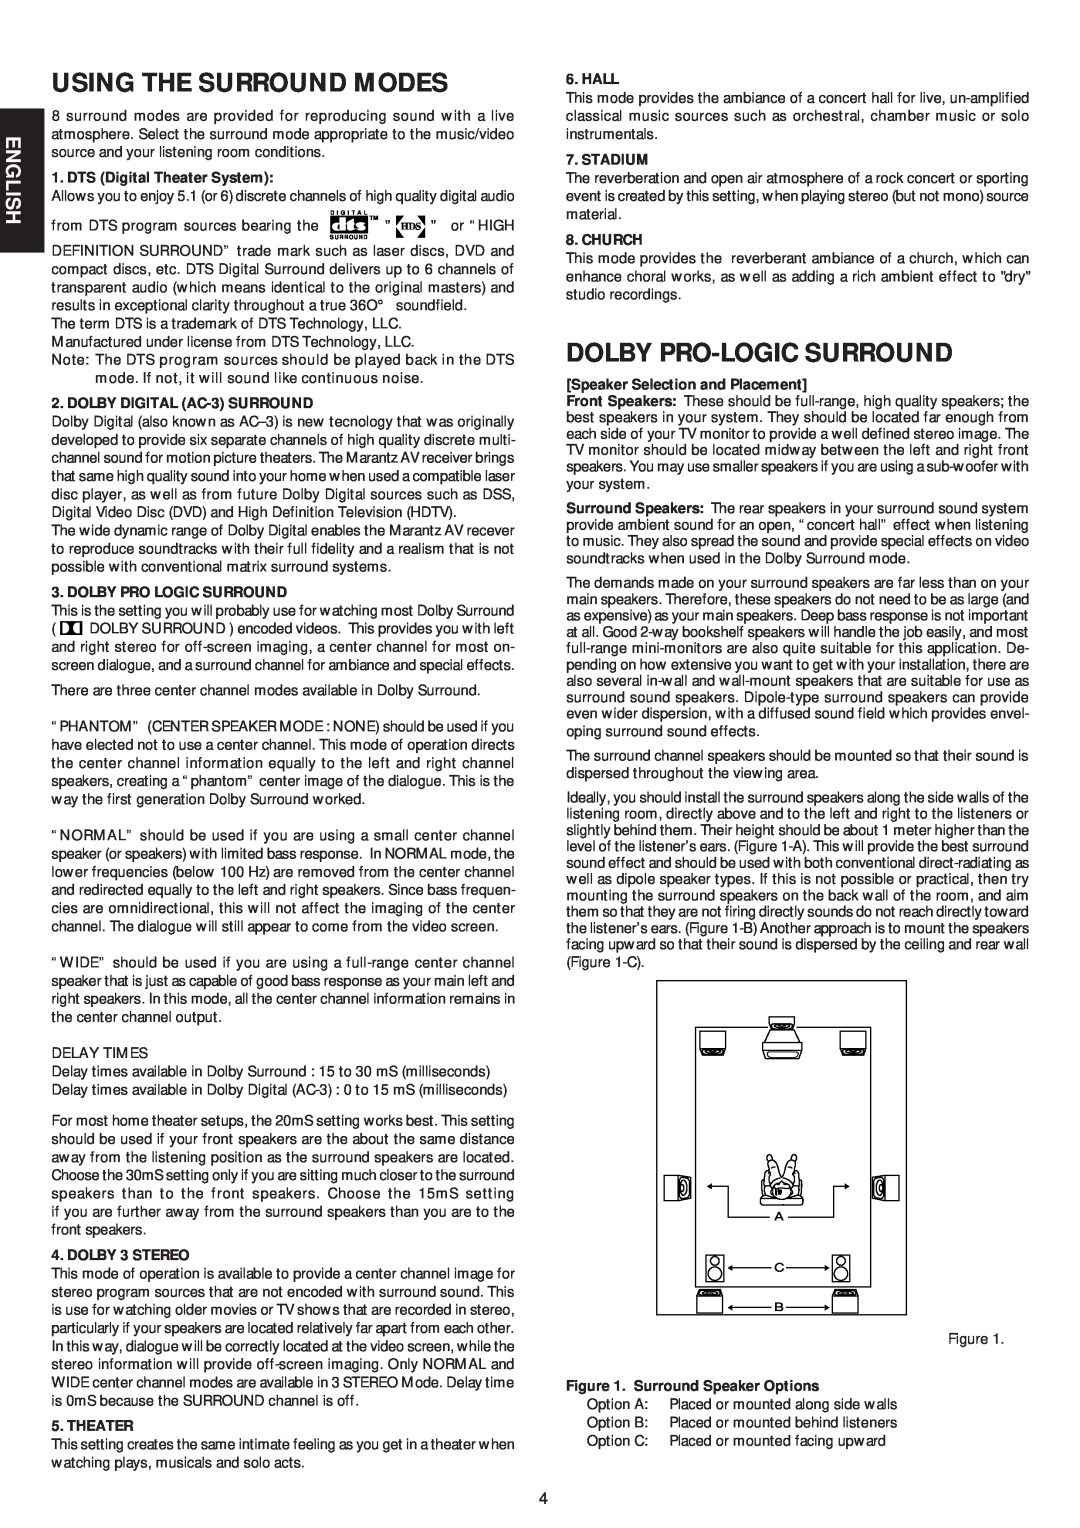 Marantz SR5000 manual Using The Surround Modes, Dolby Pro-Logic Surround, English 